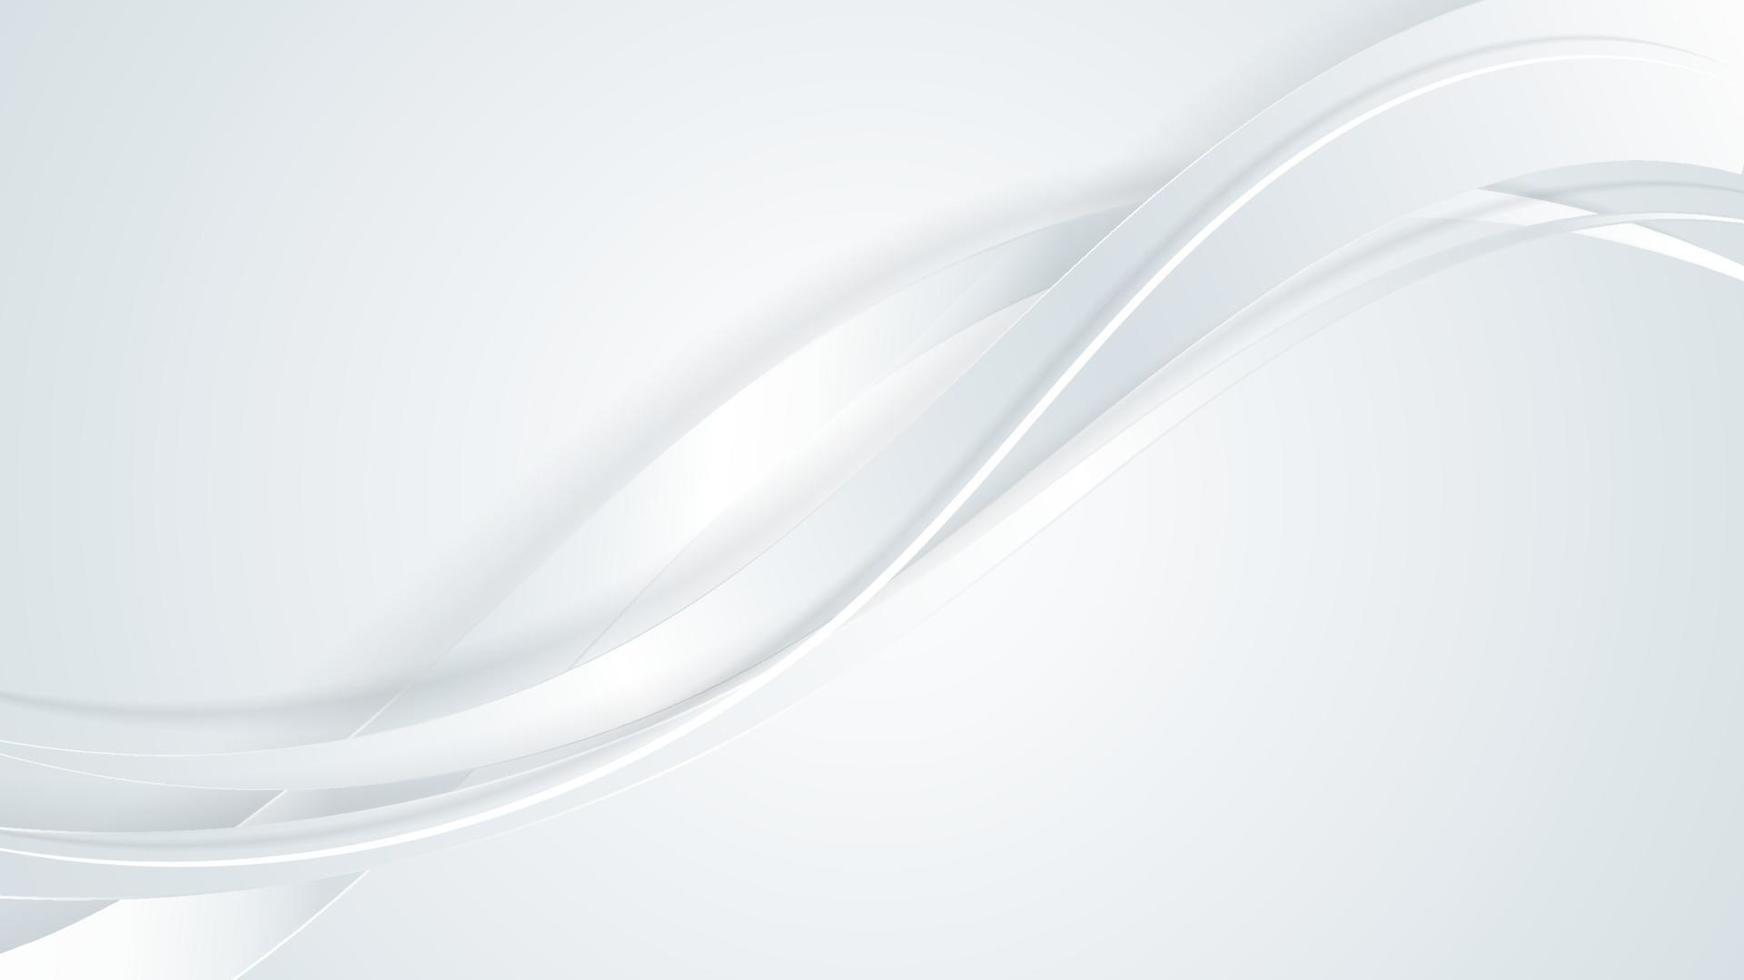 linhas curvas de onda de fita branca e cinza 3d de luxo abstrato em fundo limpo vetor